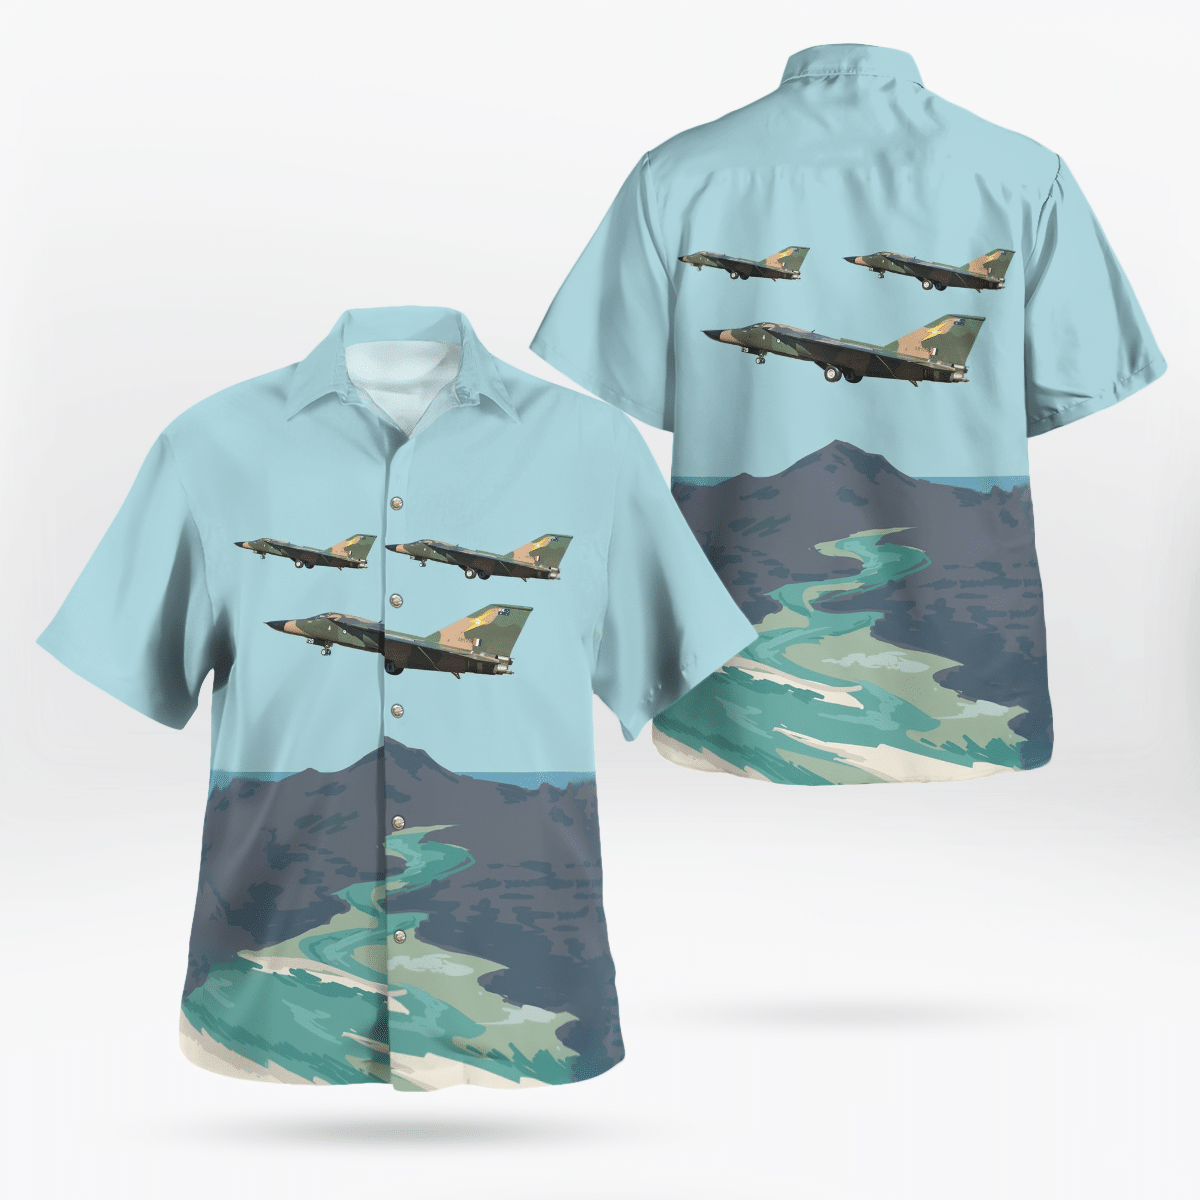 Best Hawaiian shirts 2022 202